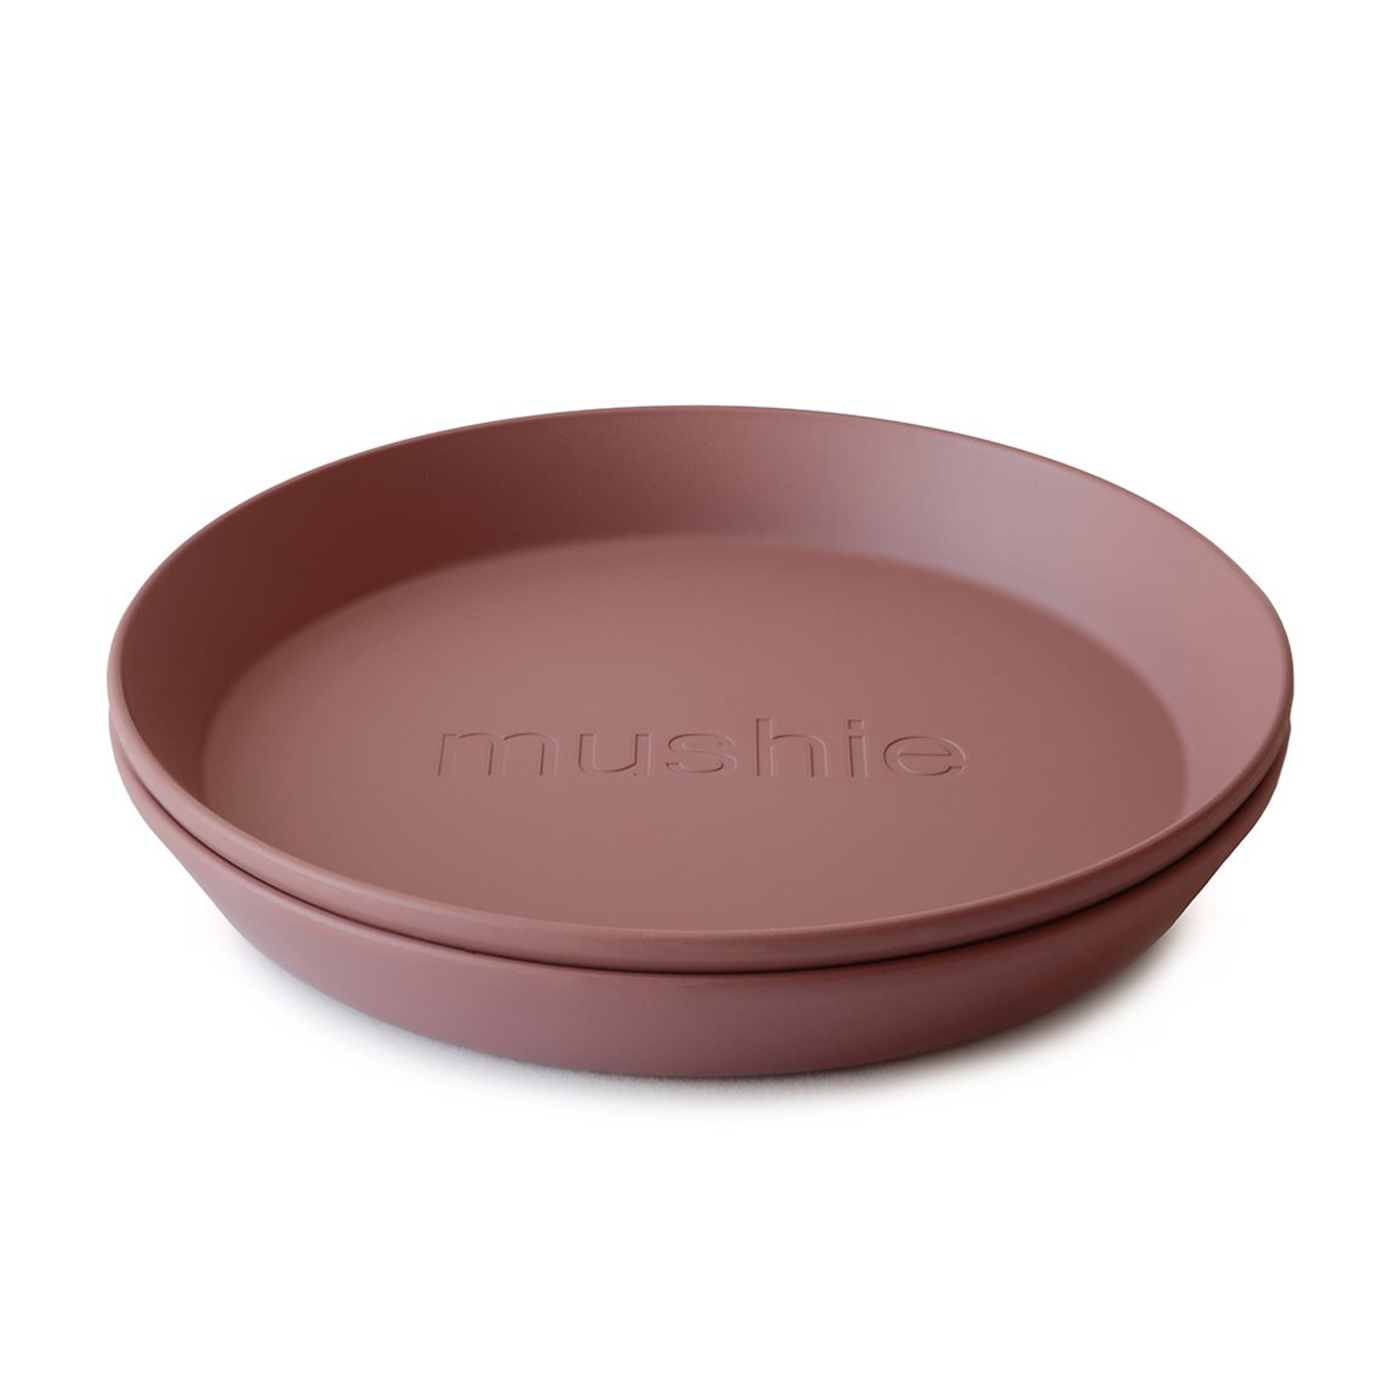 MUSHIE Mushie İkili Yuvarlak Yemek Tabağı  | Woodchuck